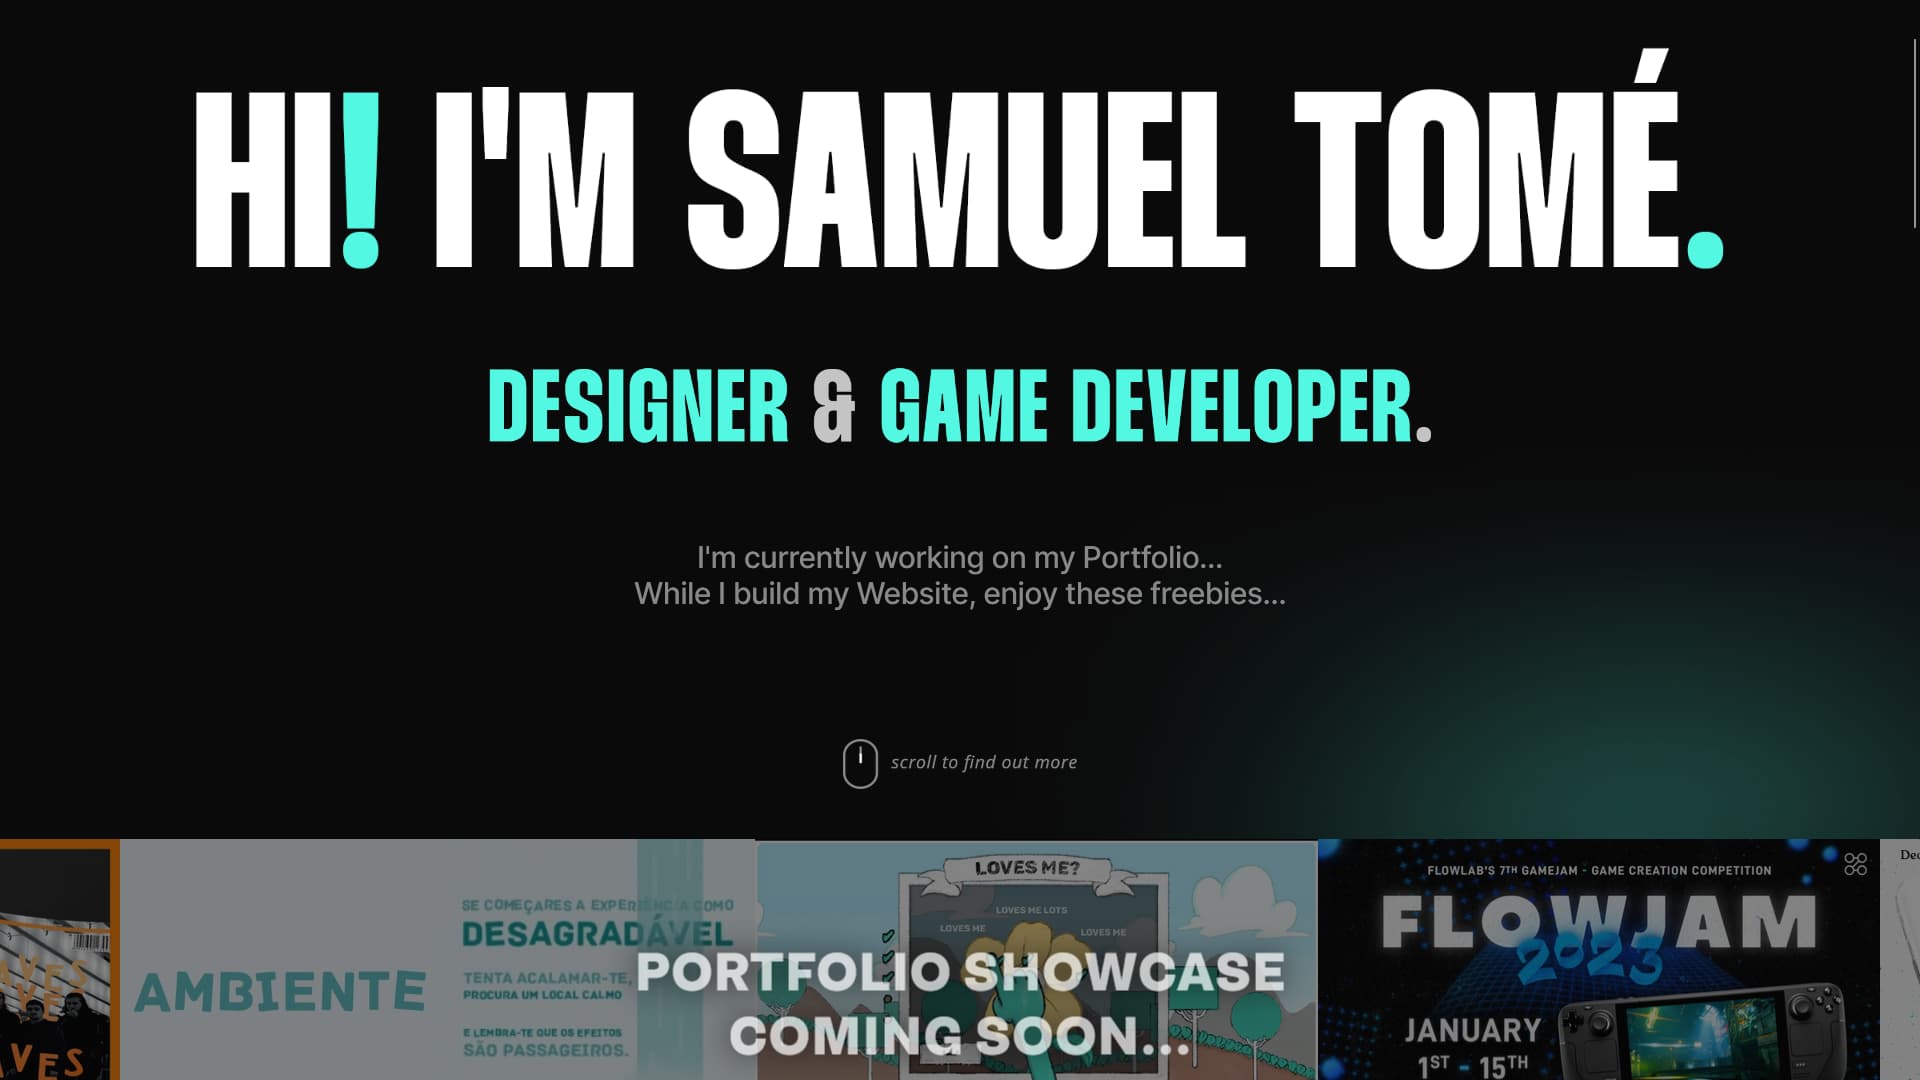 Samuel Tomé Website Designer & Game Developer